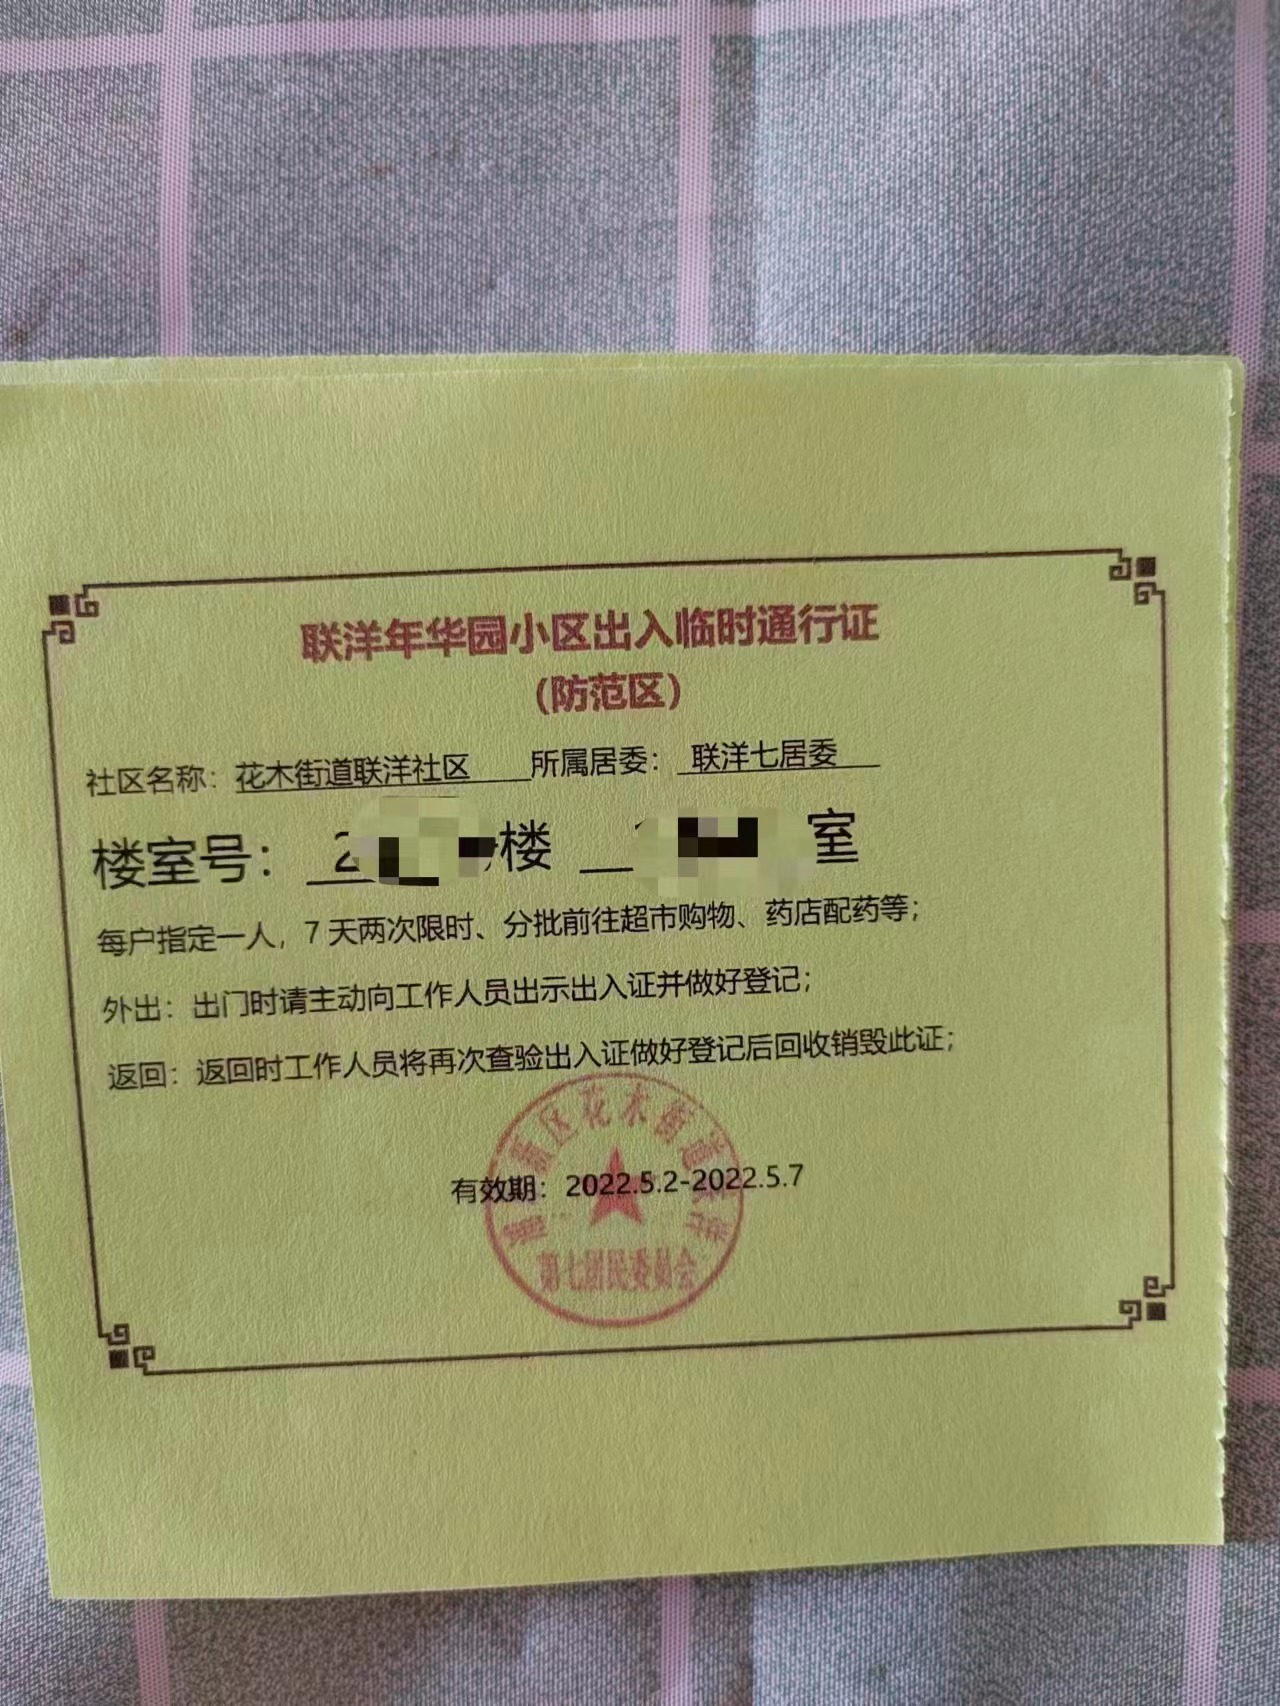 上海新顺小区(摄影记疫｜上海部分小区人员获准外出，看看临时出入证长啥样)